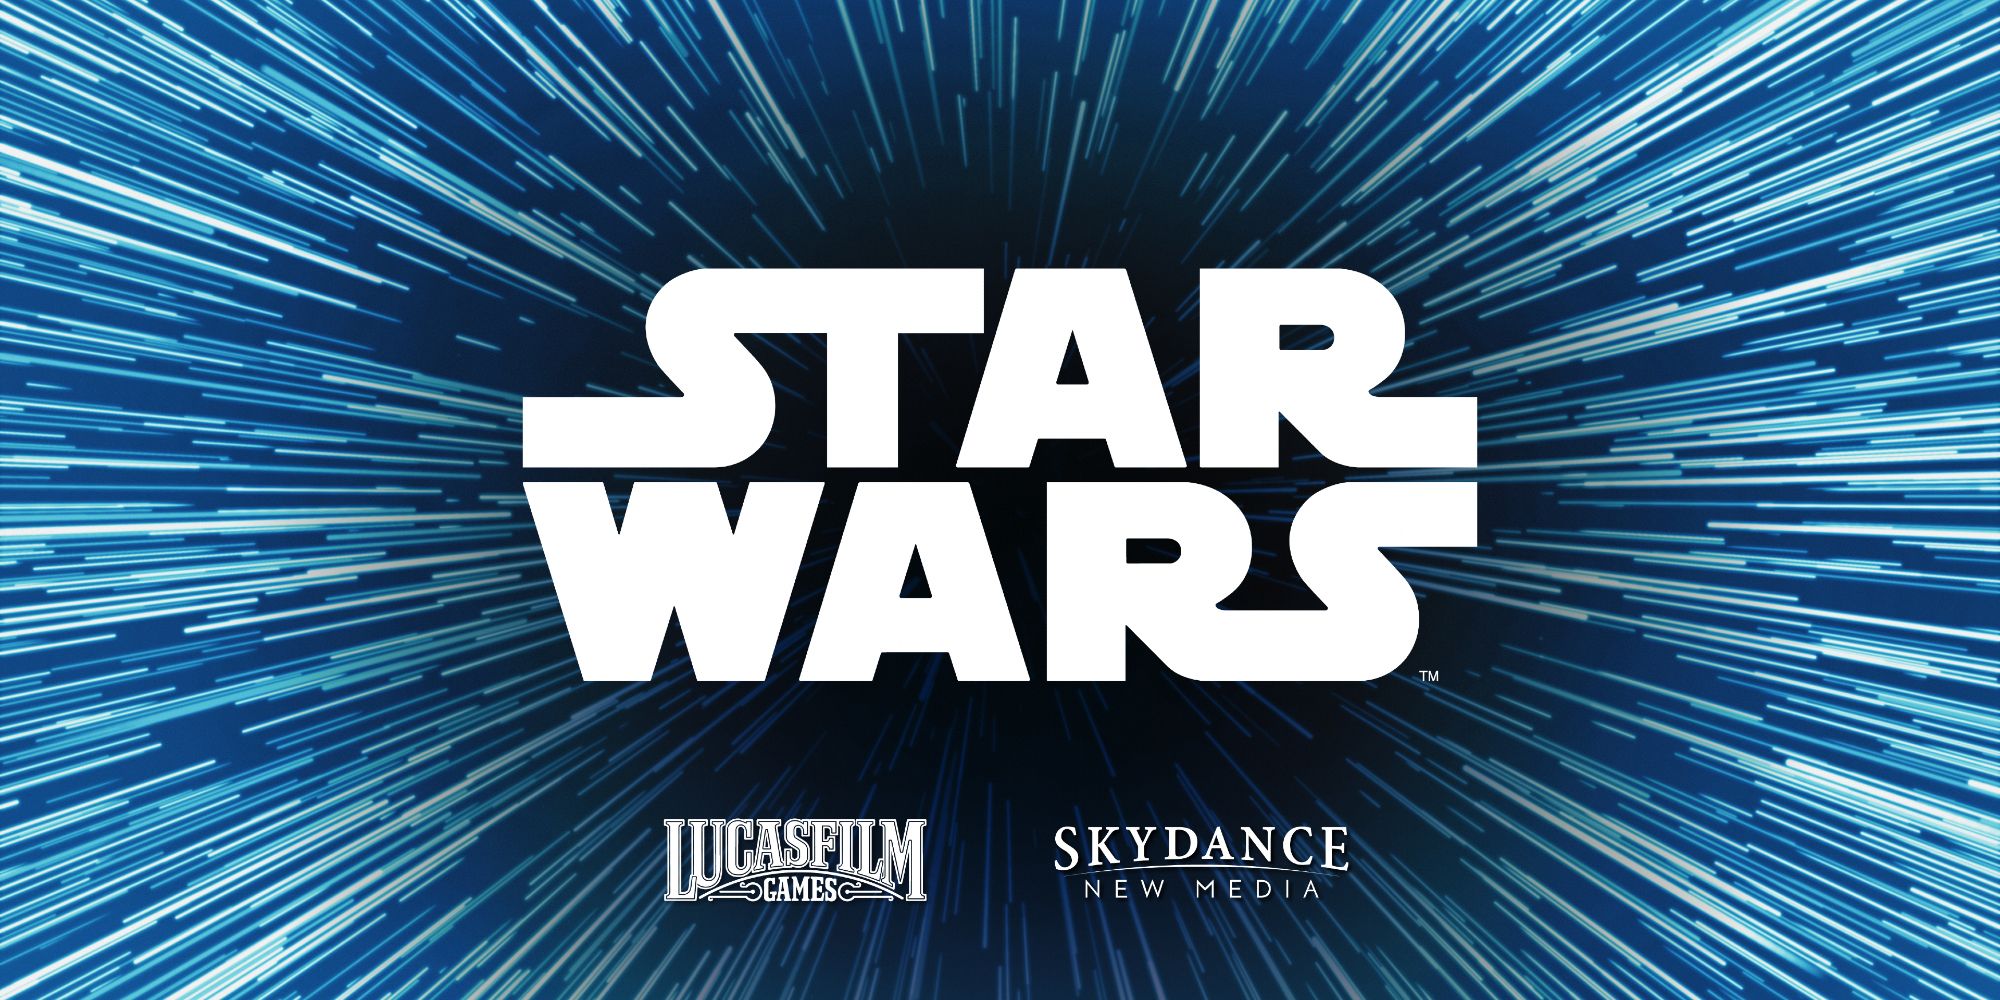 Gambar logo Star Wars di tengah efek hyperdrive Star Wars dengan logo Lucasfilm dan Skydance di bawahnya.